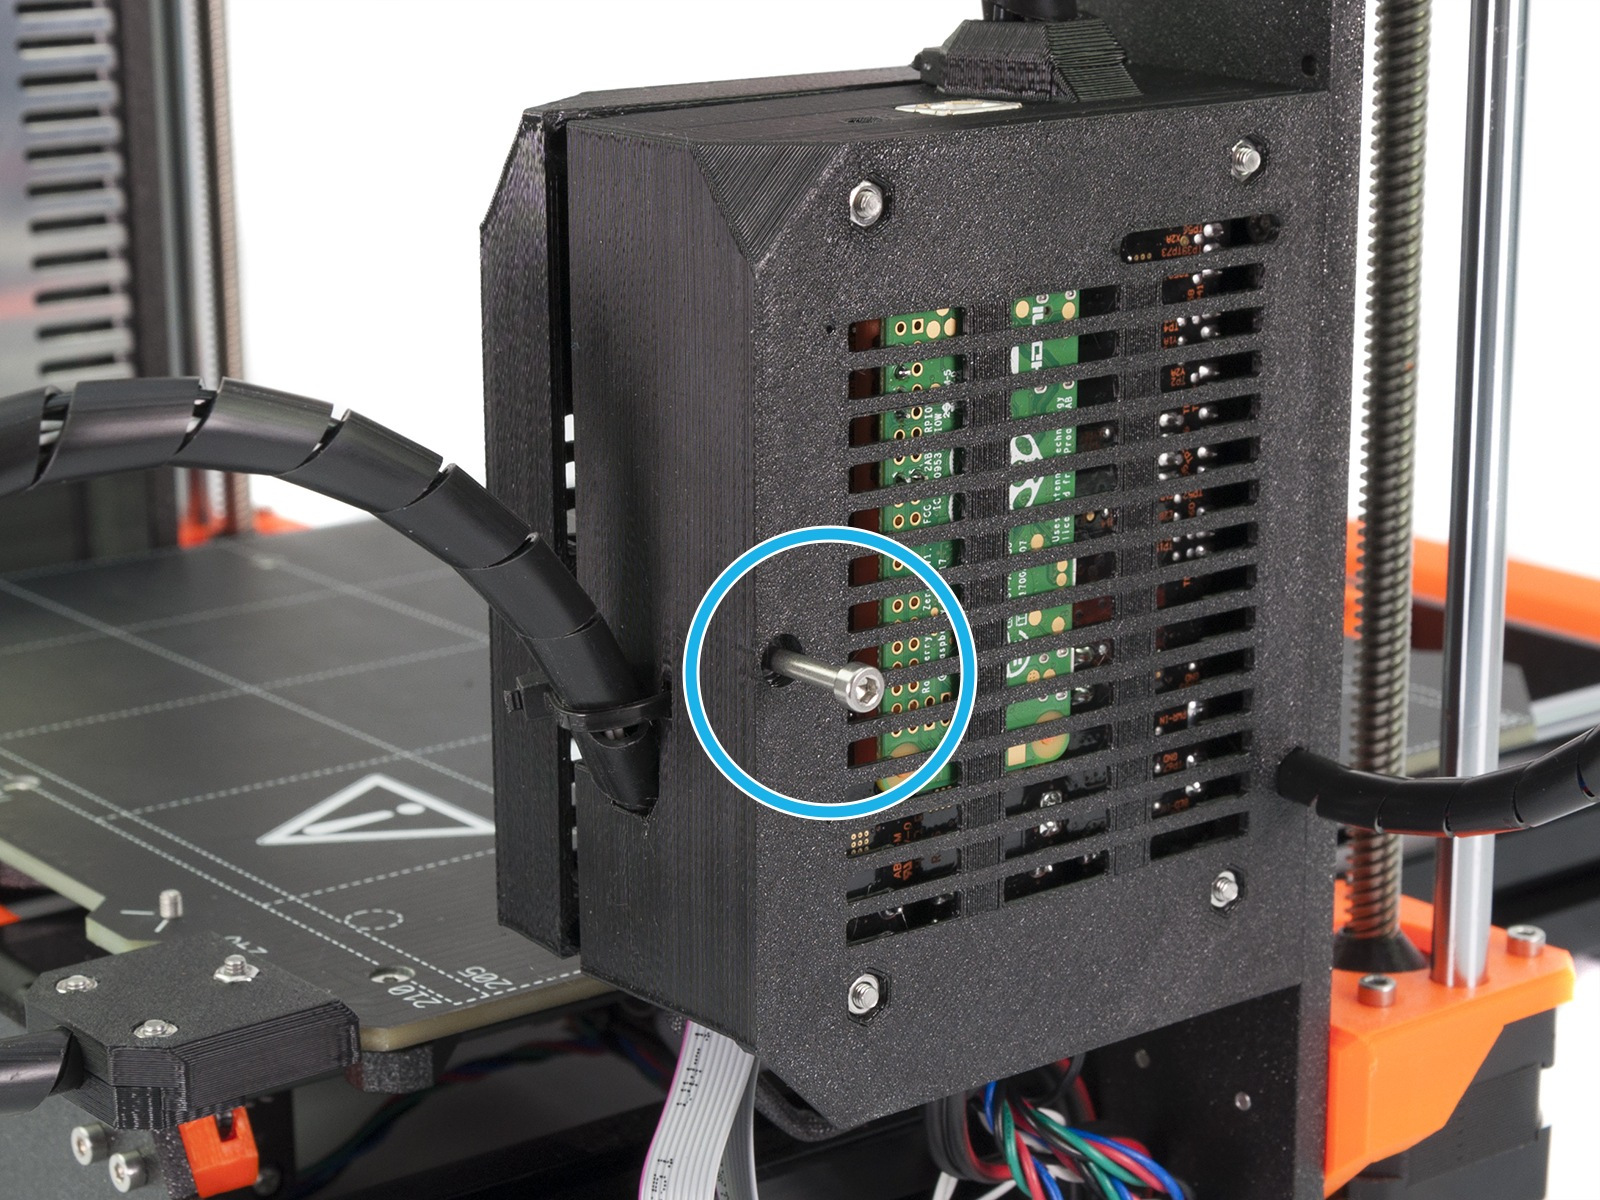 Comment fabriquer une imprimante 3D avec un Raspberry Pi - Mk 3 R Pi Zero W